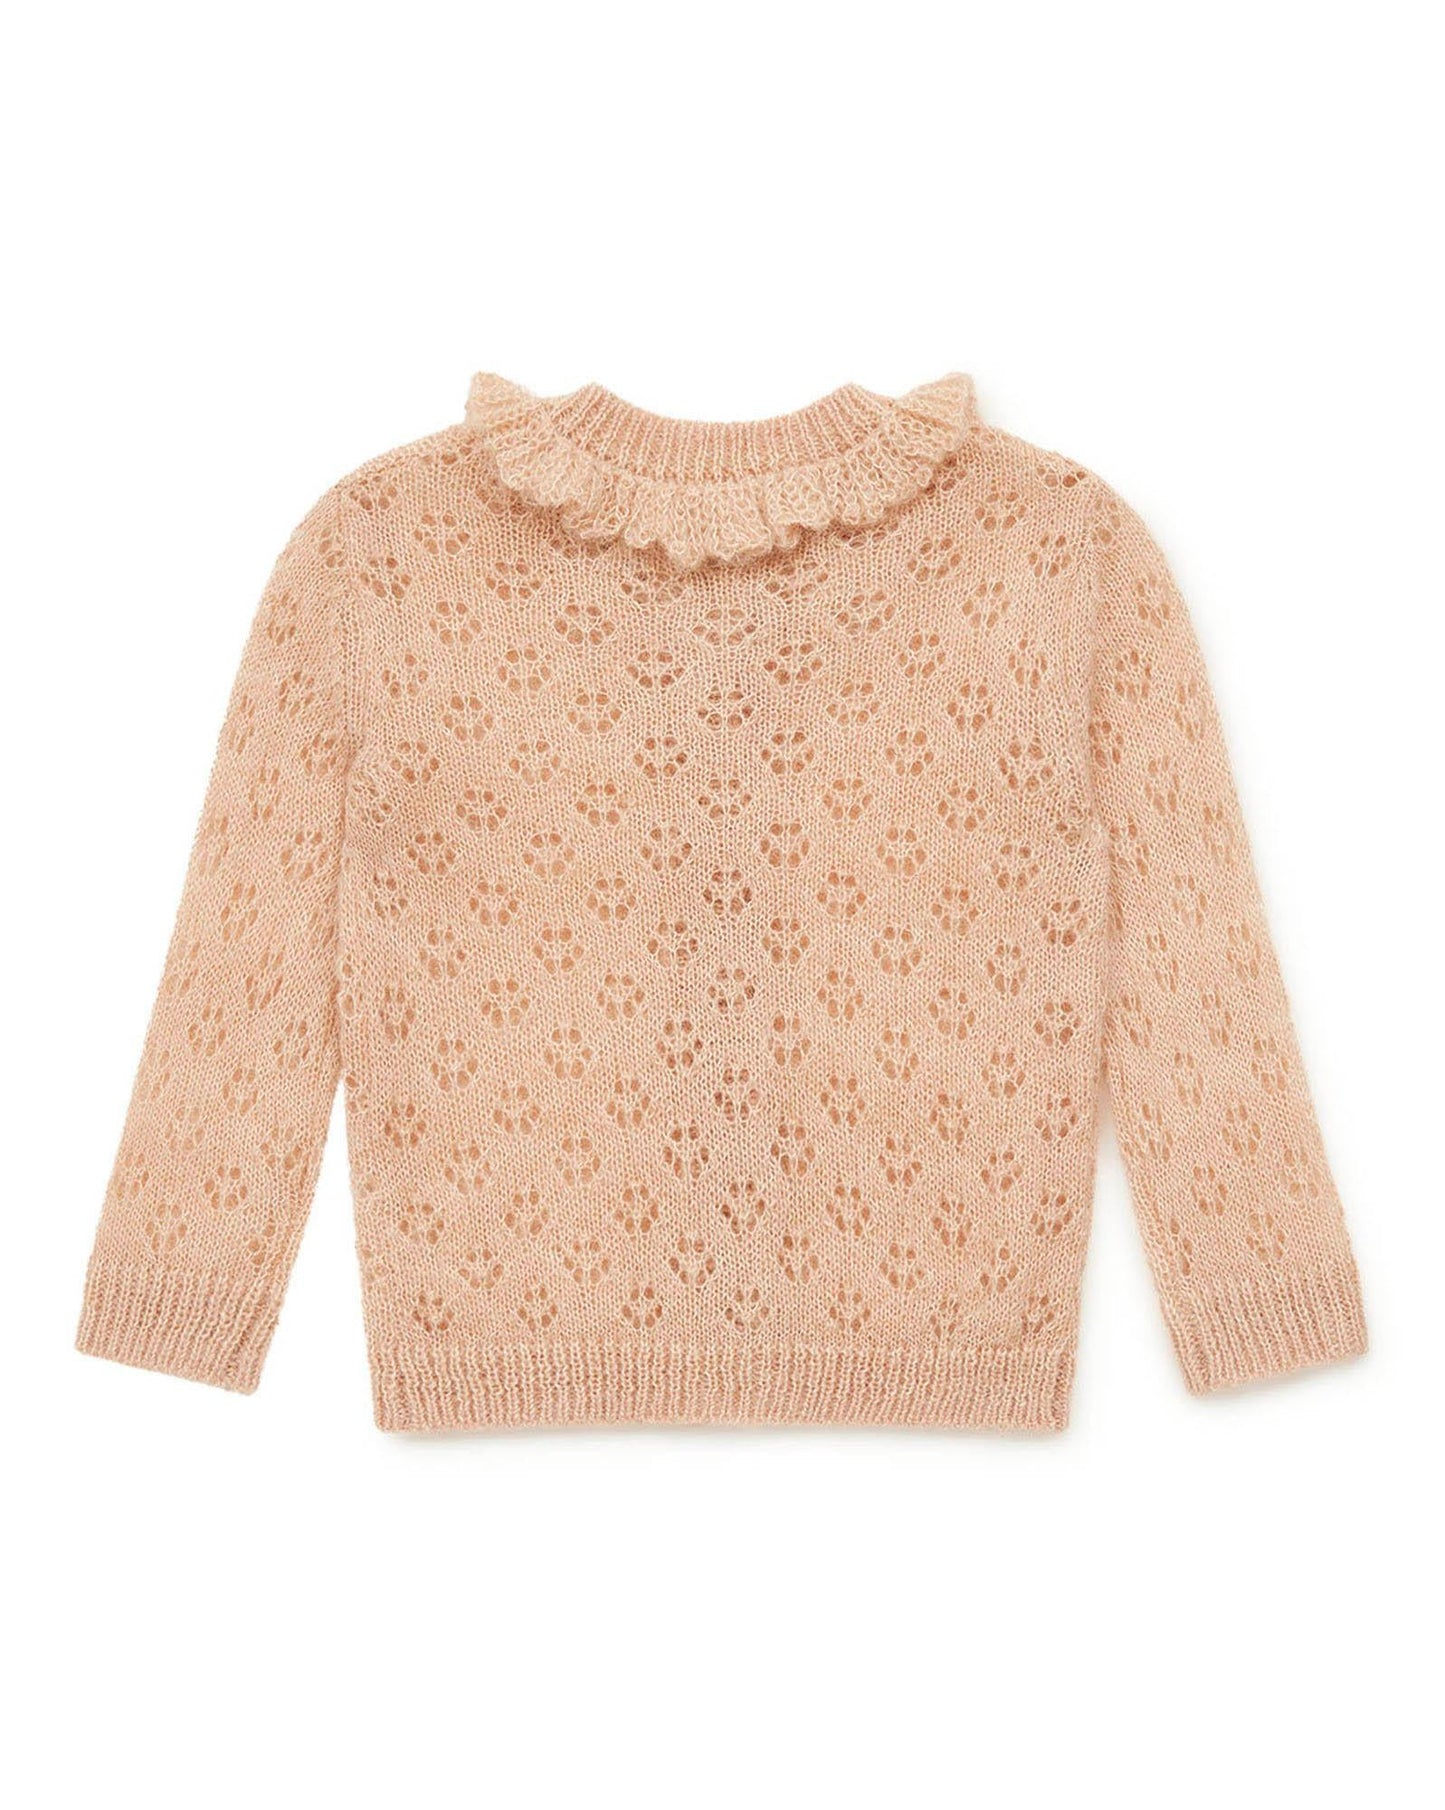 Cardigan - Corolle rose Bébé en tricot